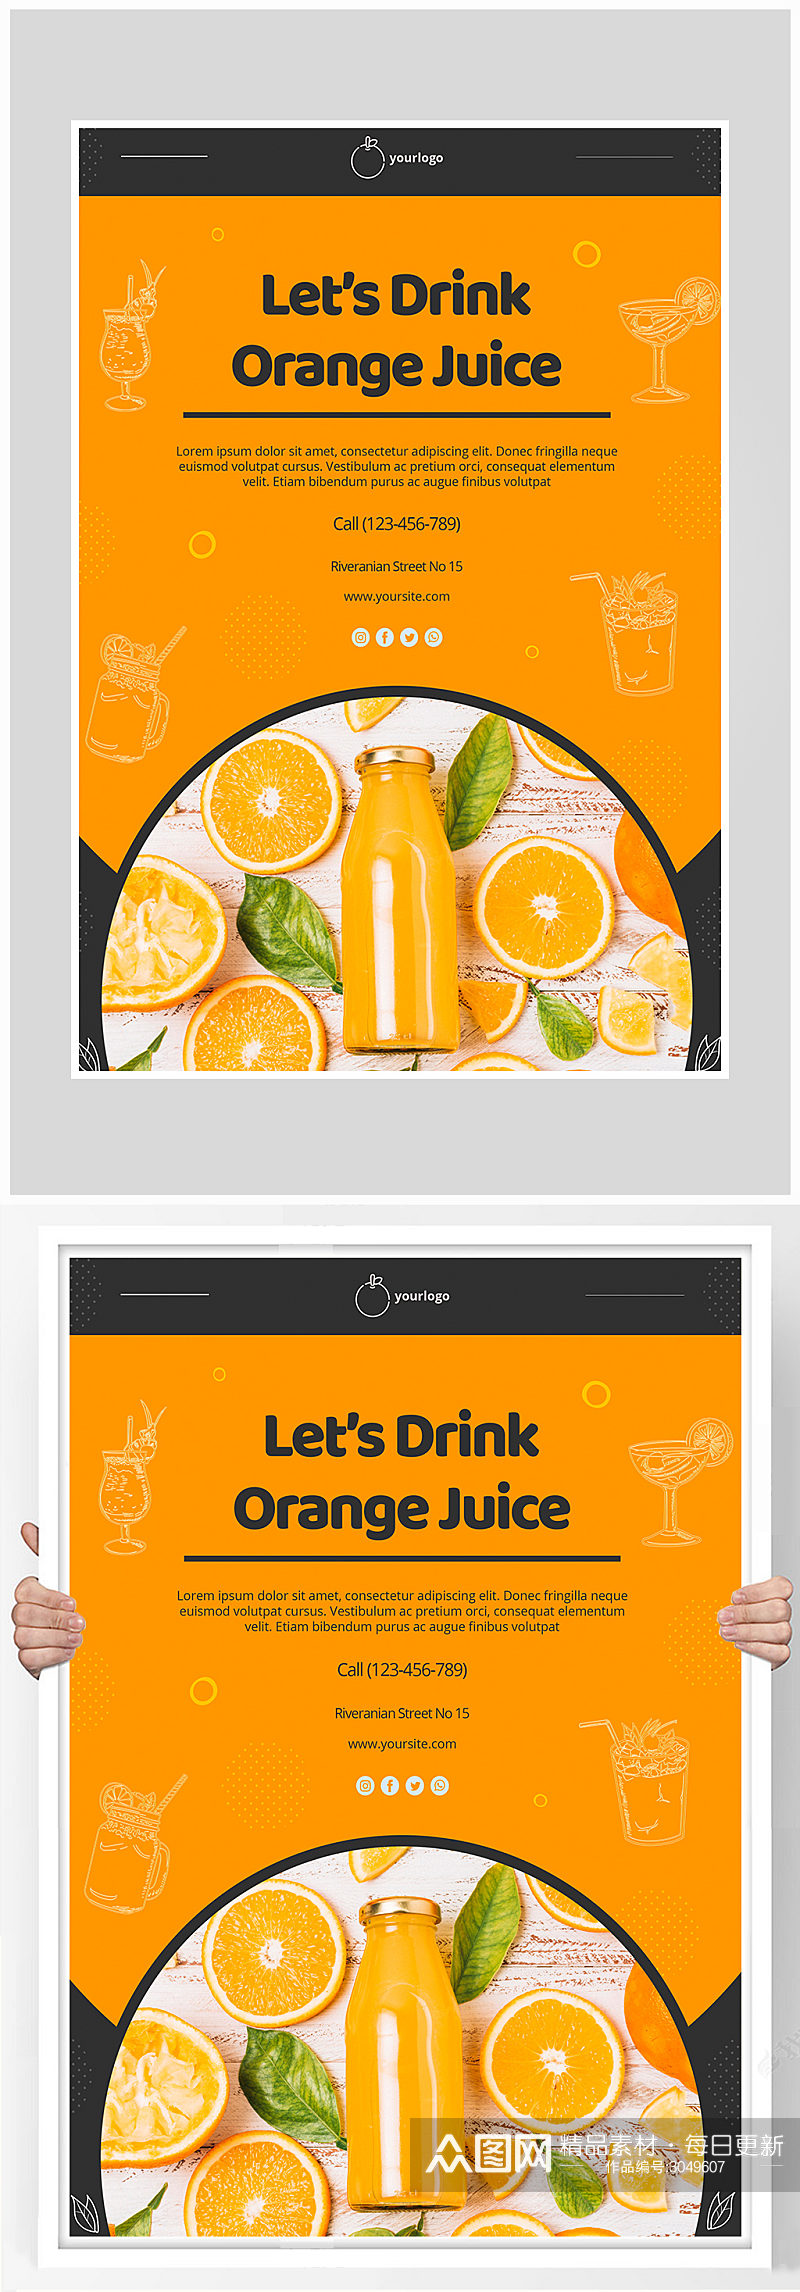 唯美简约橙汁饮料海报设计素材